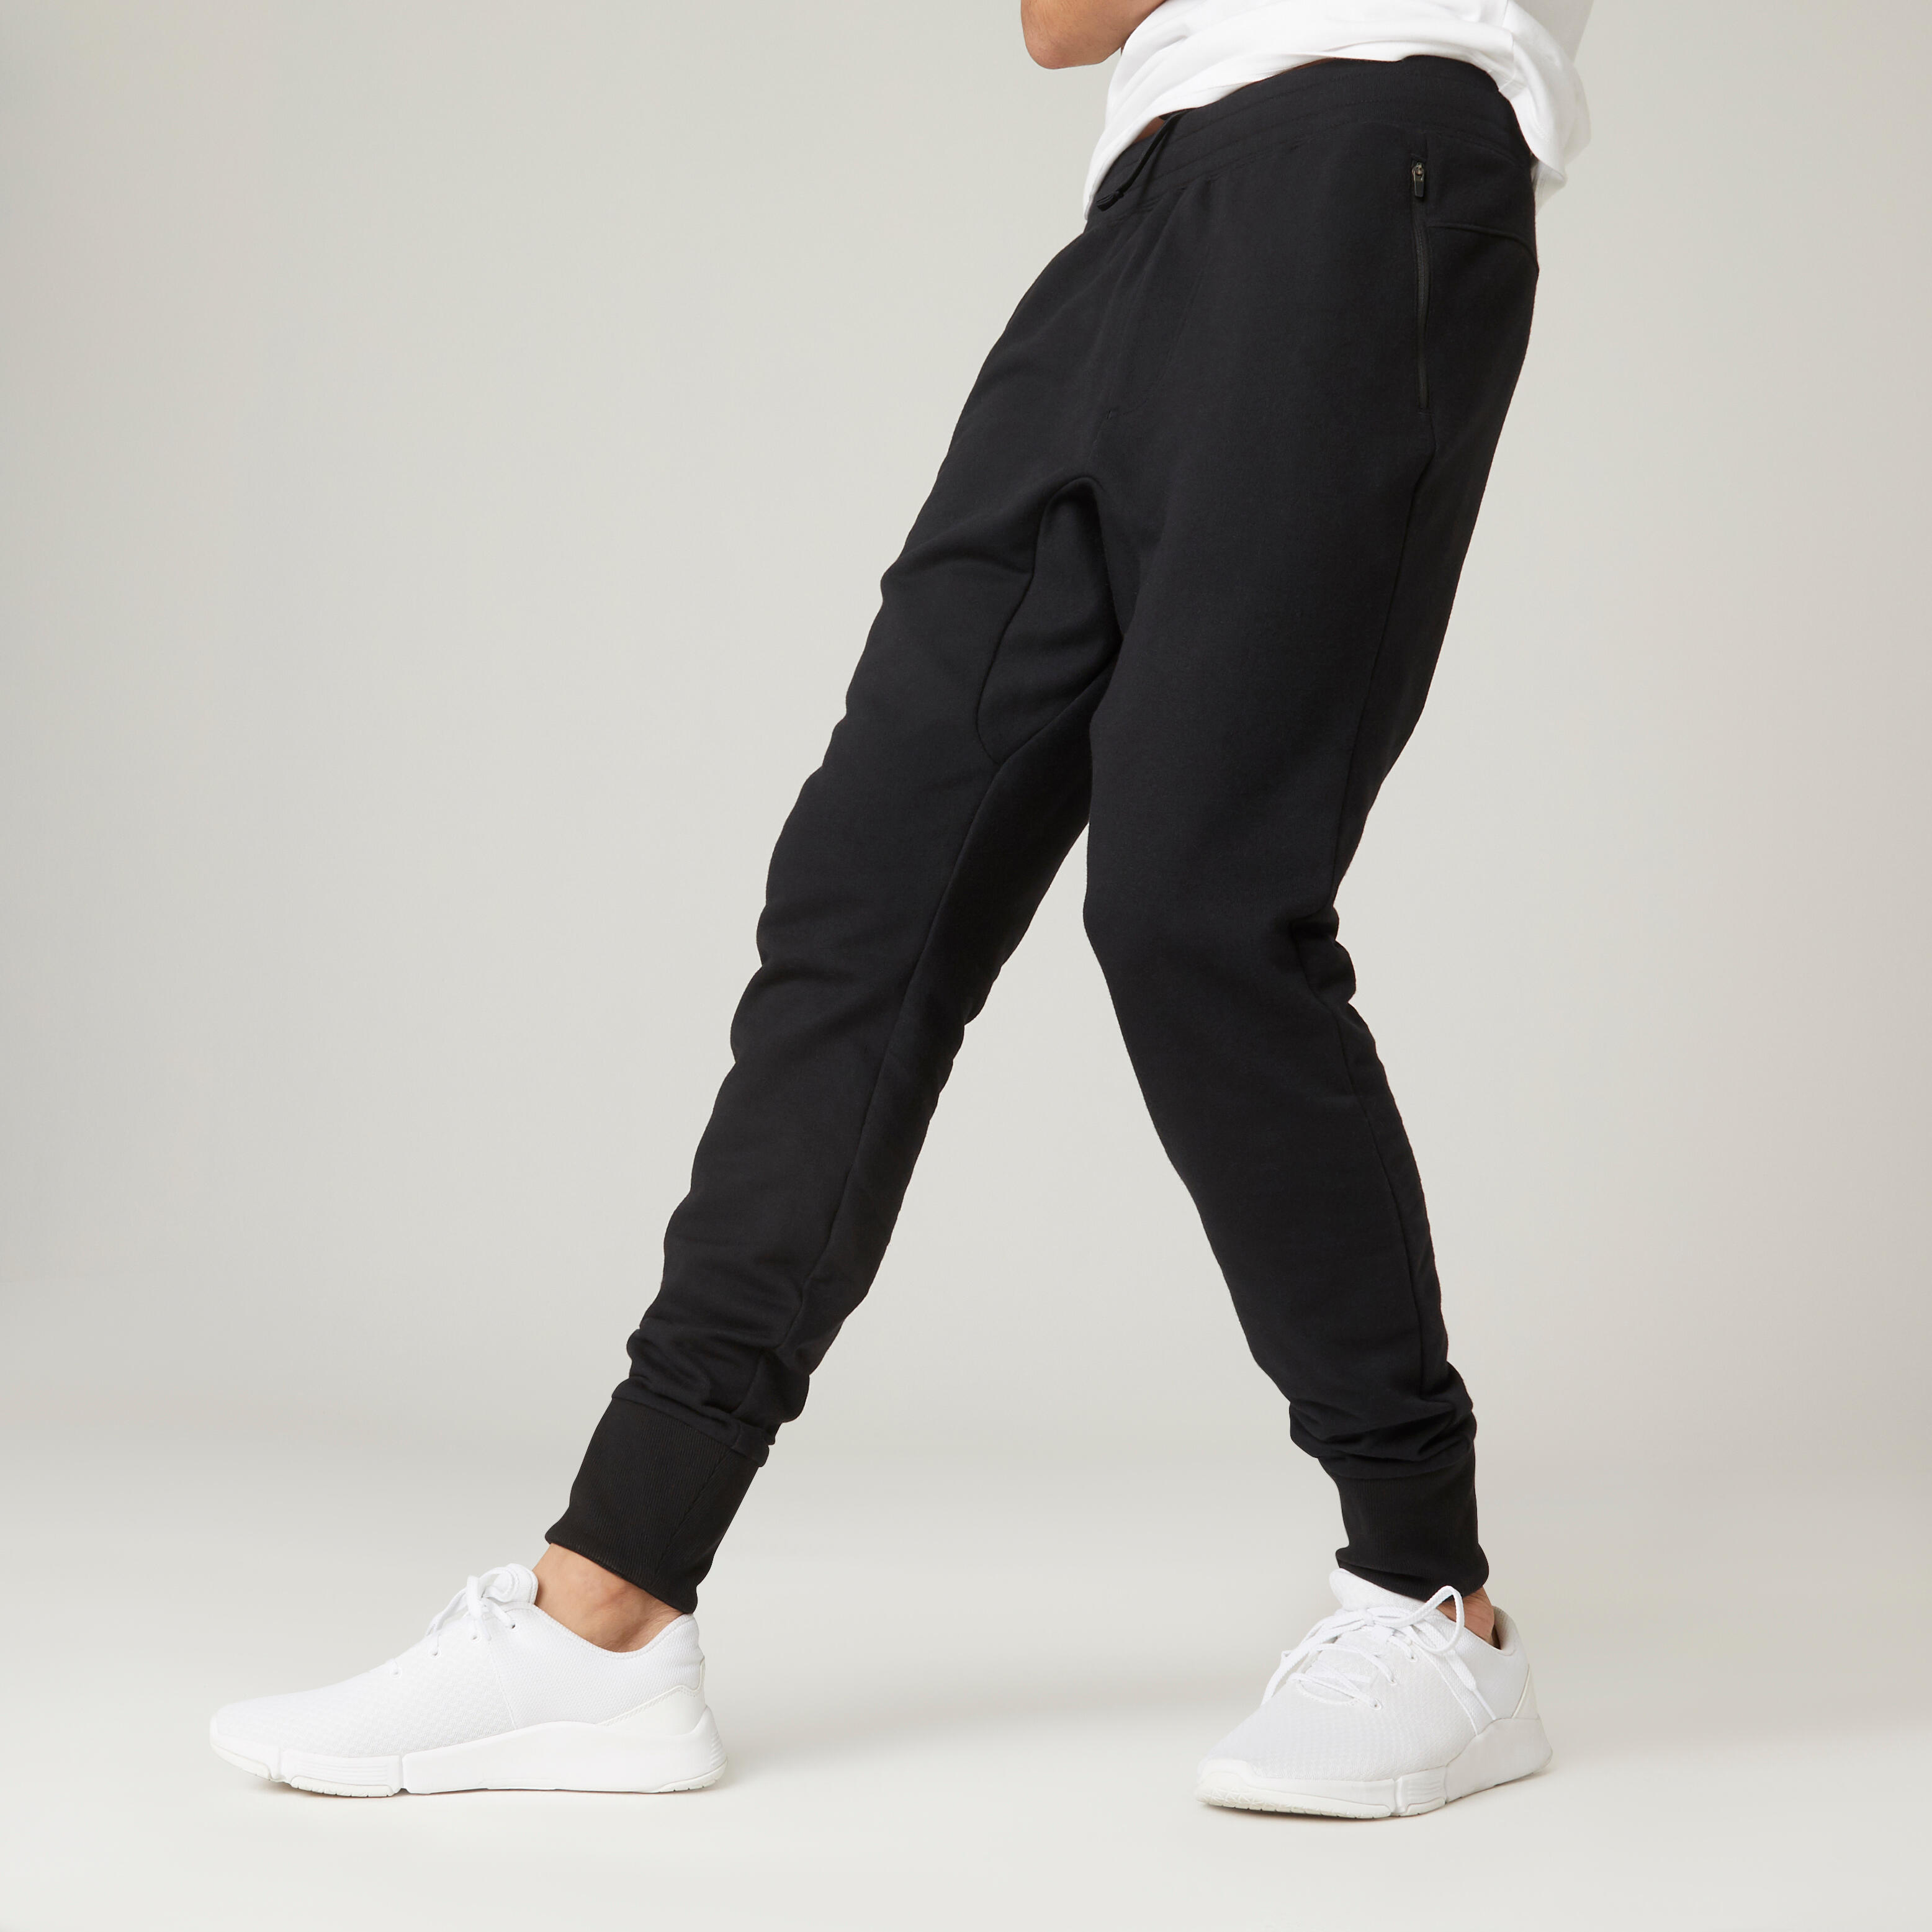 Pantalon de Jogging en Coton pour Homme avec Poches zippées Pantalon de Sport Long pour Les Loisirs 